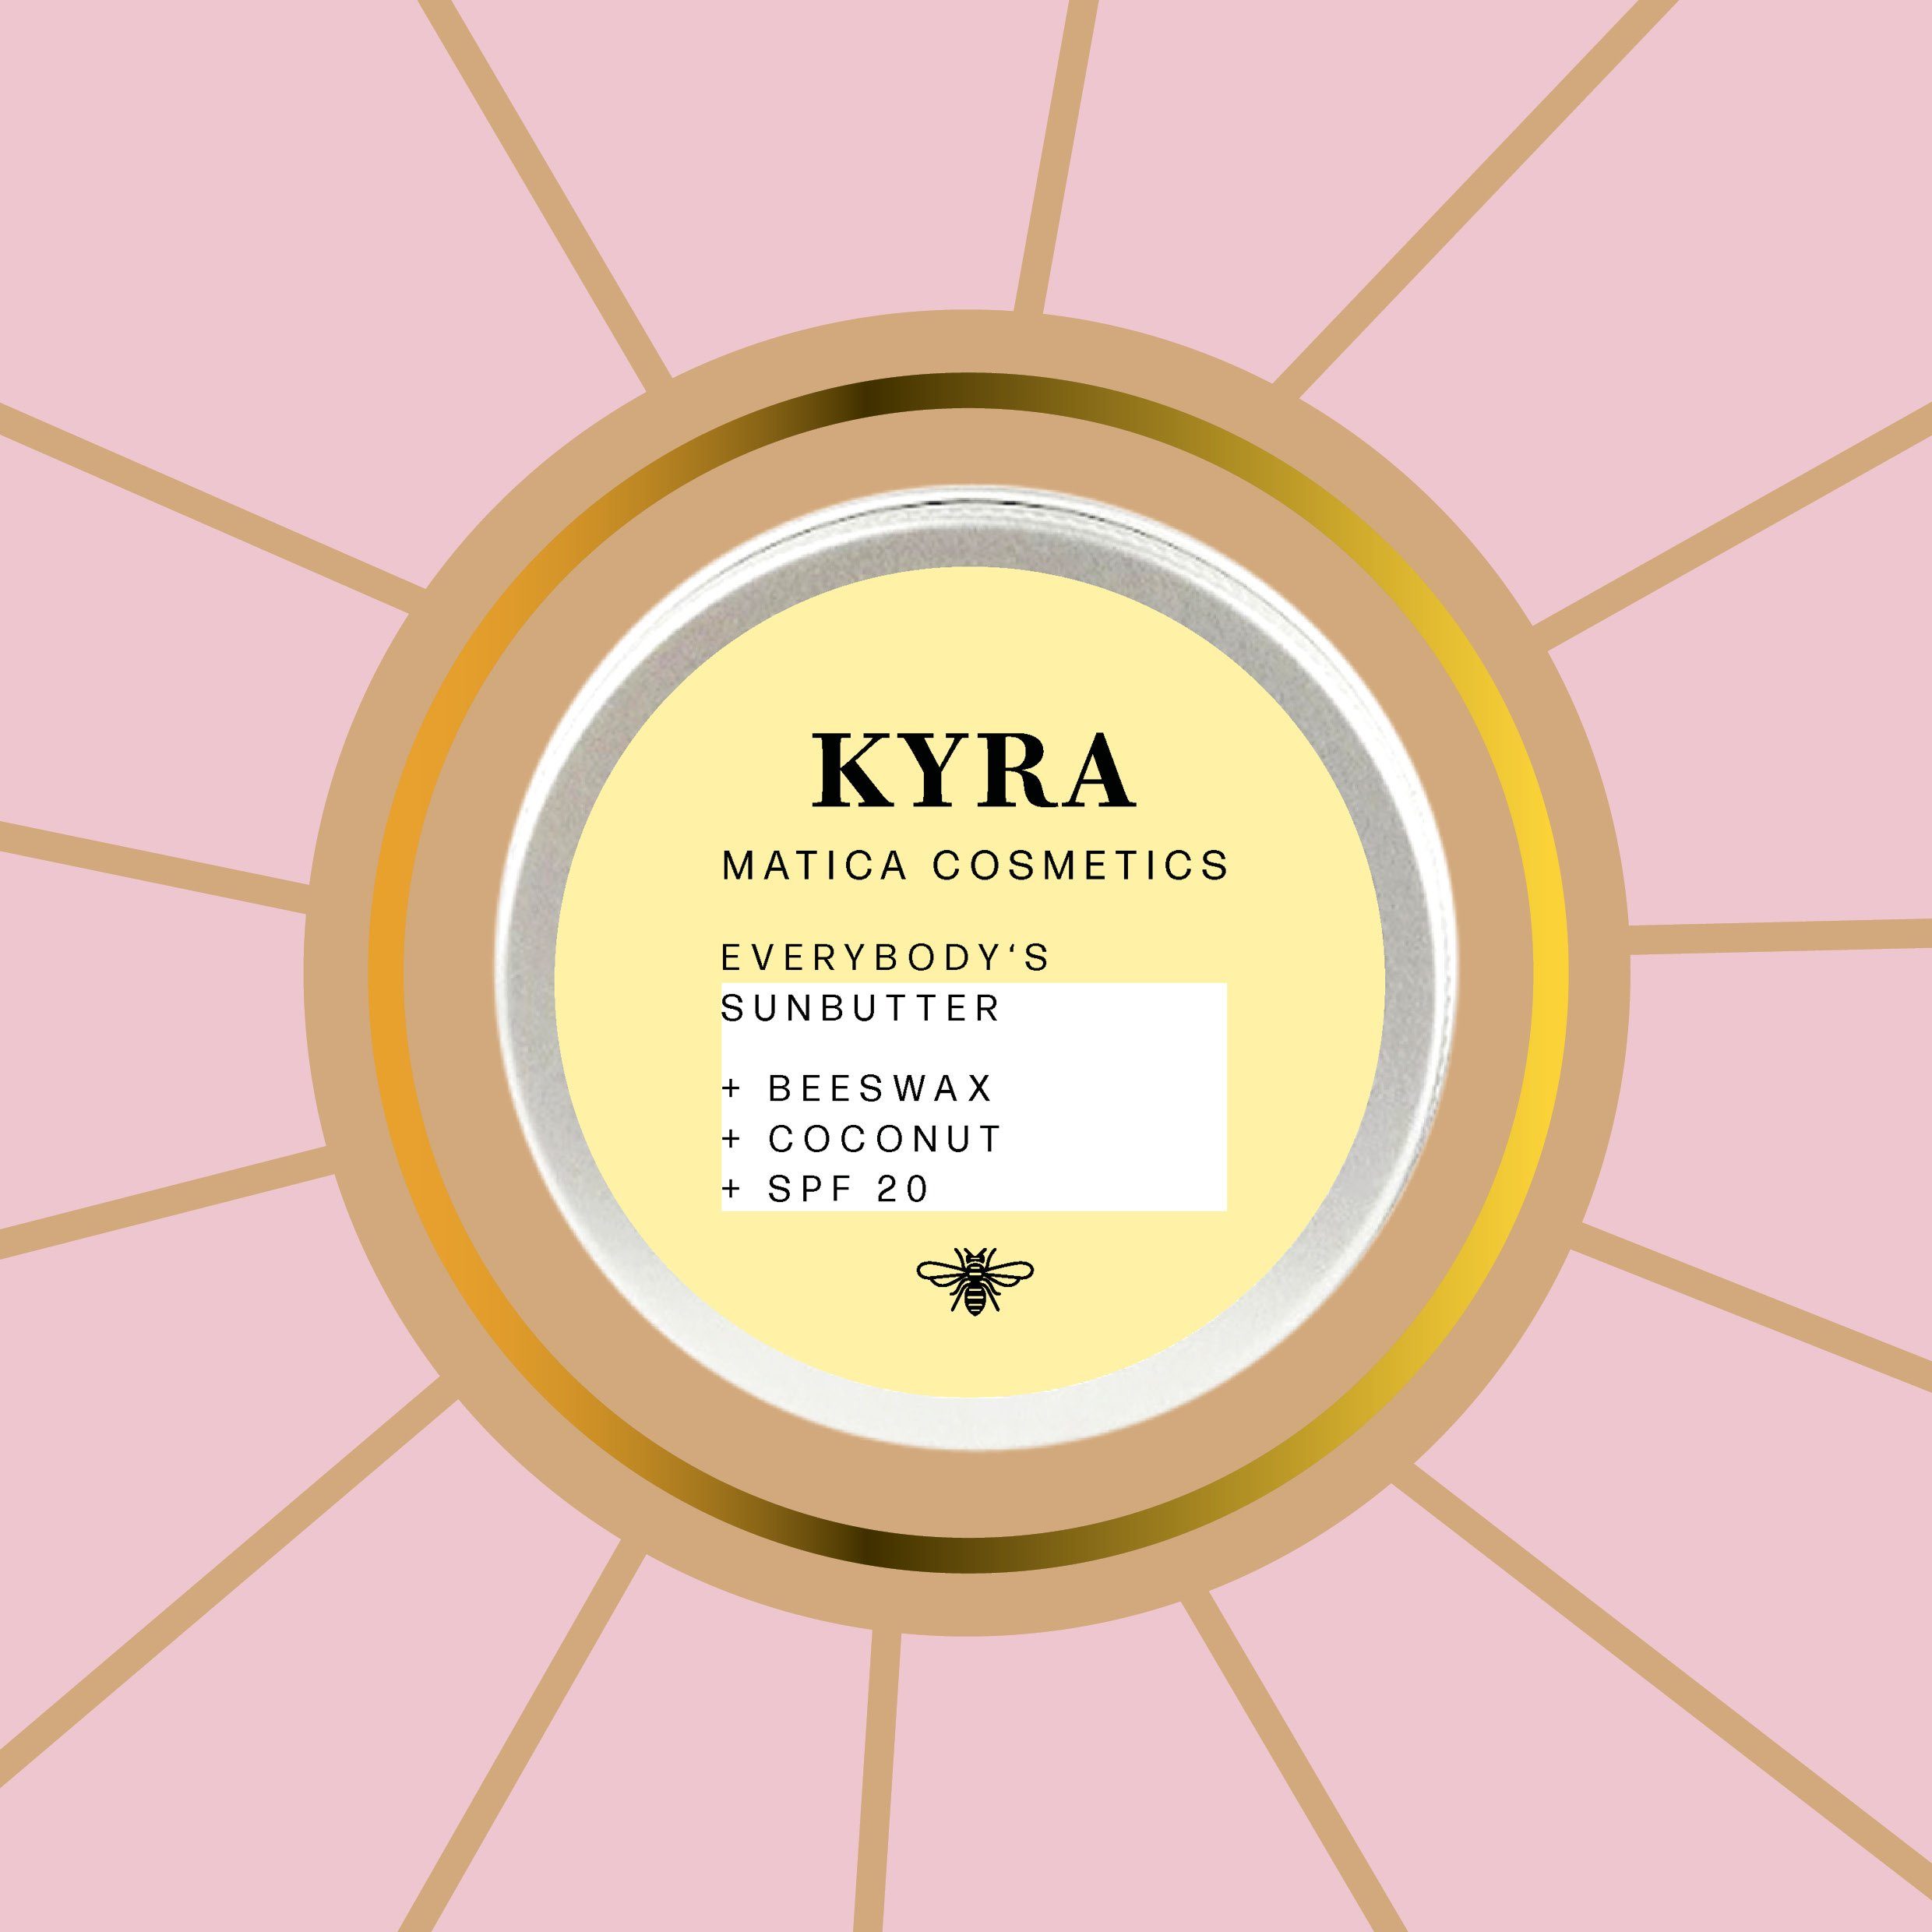 KYRA Kokos Matica Butter Cosmetics Sun Sun After UV-Schutz Sonnenbutter